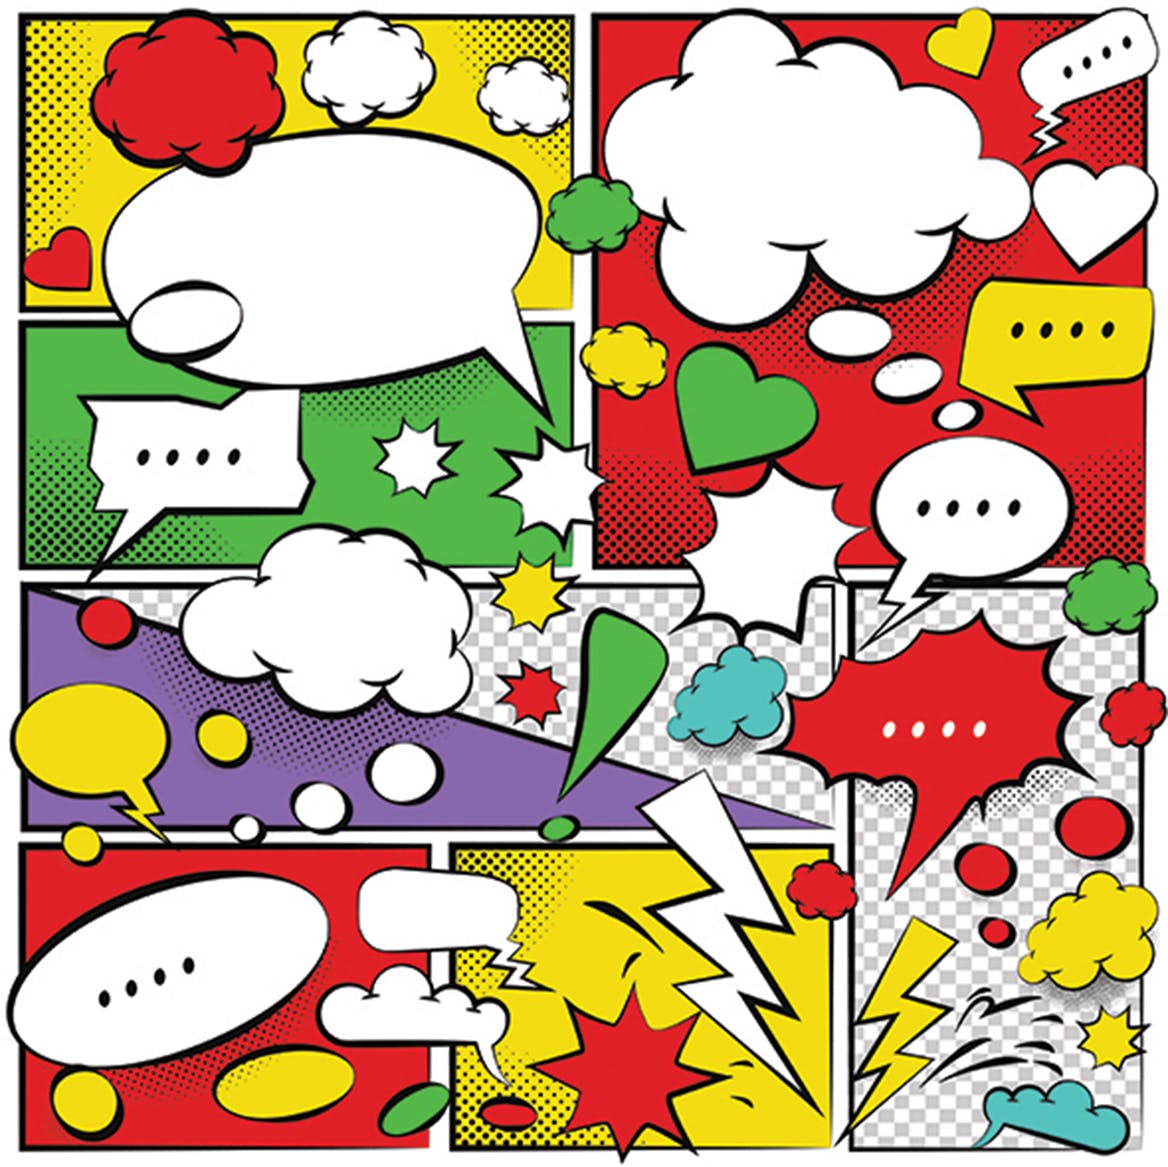 美式动漫对话泡泡框手绘图形设计素材 Comic Speech Bubbles Design插图1